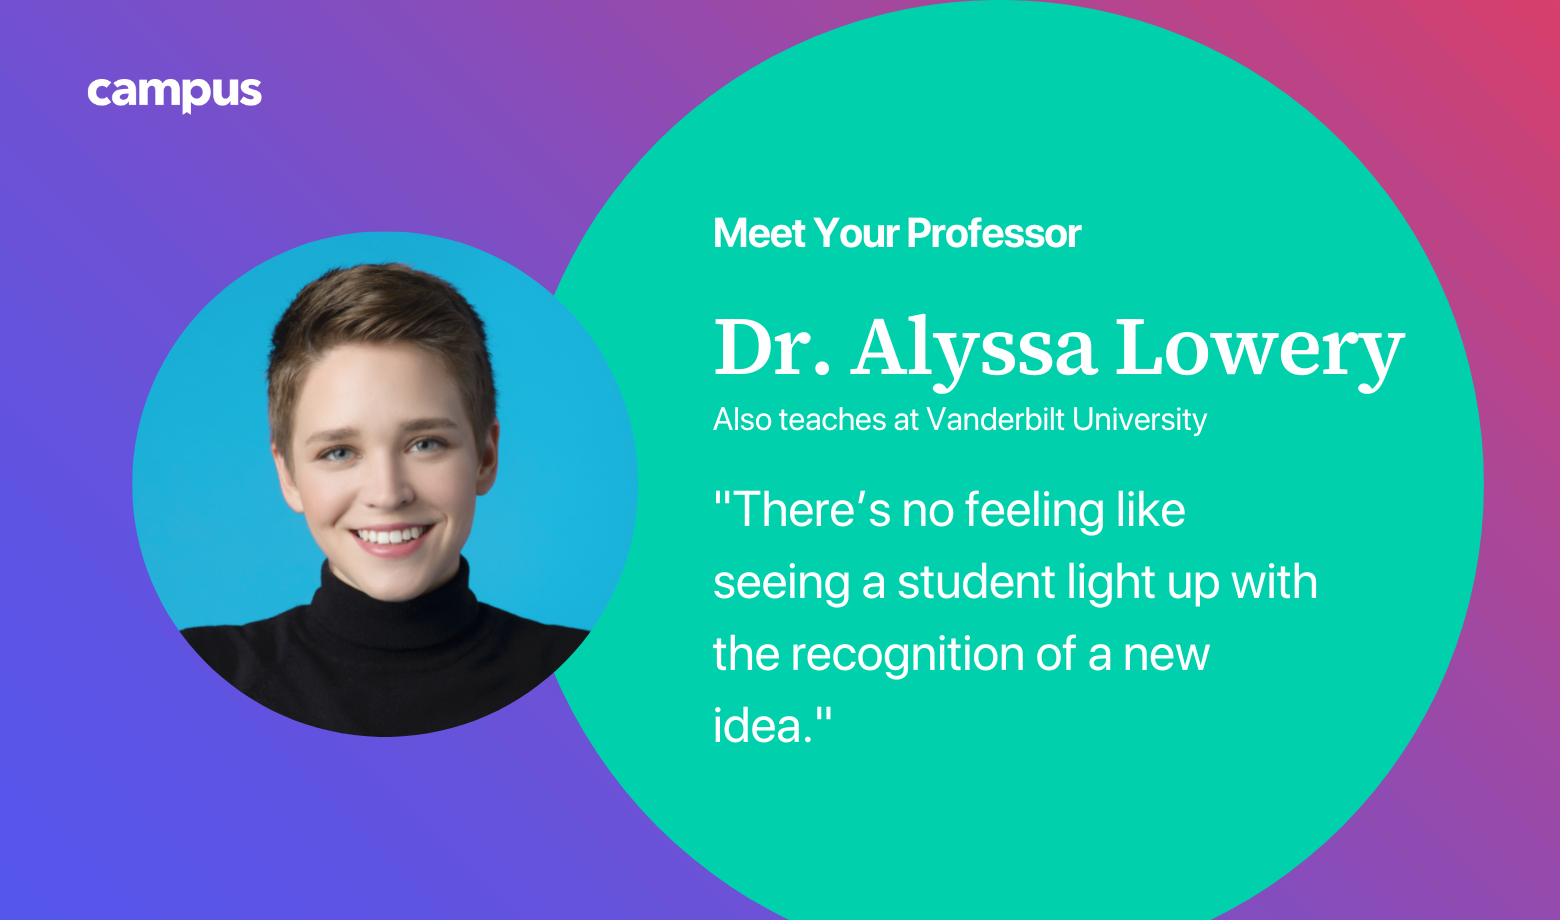 Meet Your Professor: Dr. Alyssa Lowery